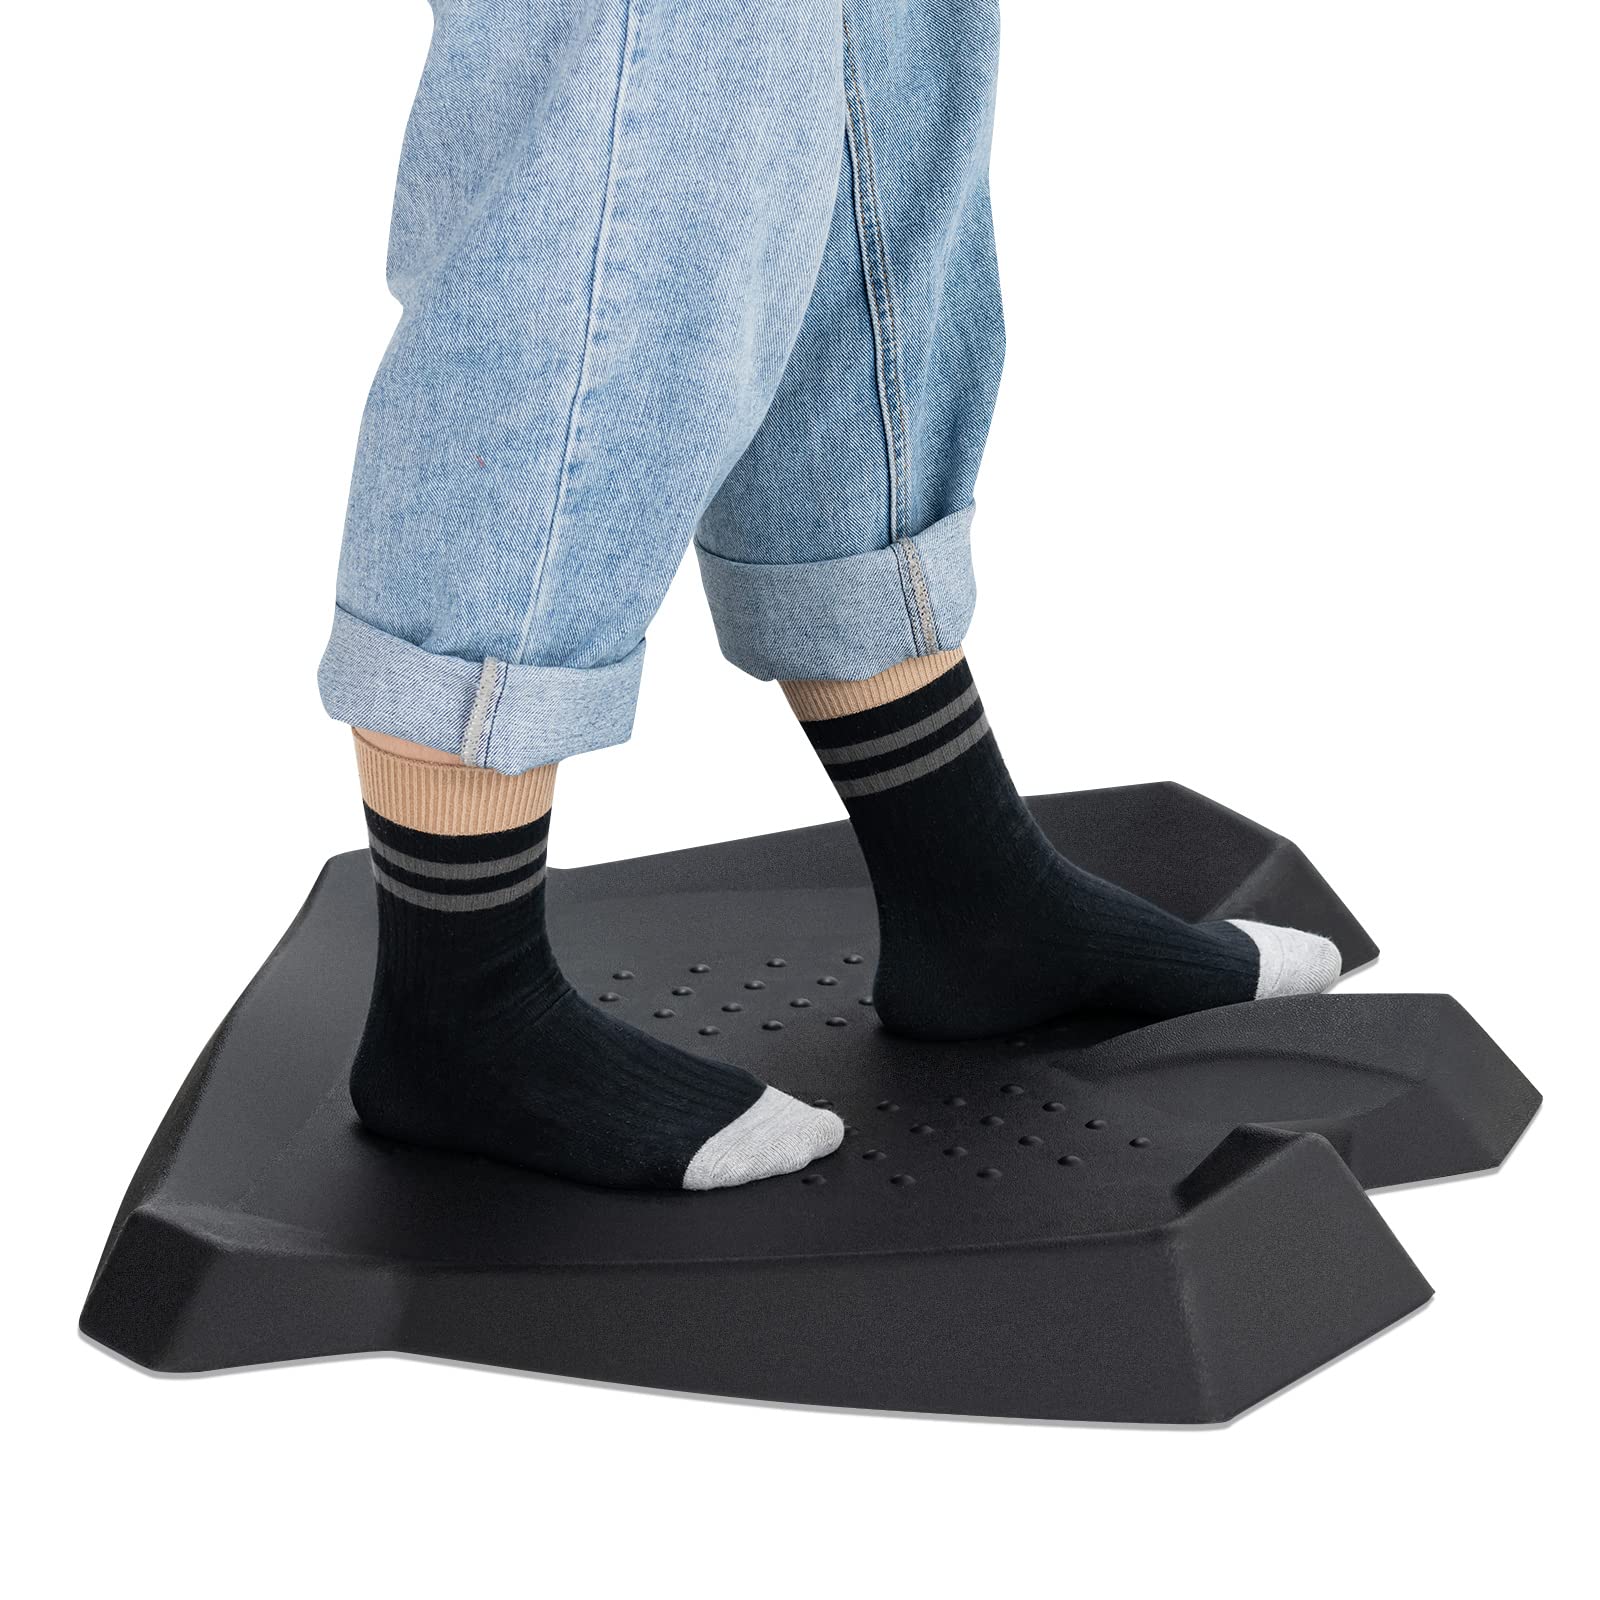 Giantex Anti Fatigue Mat, Not-Flat Standing Mat w/ Foot Massage Points Diverse Terrain & Beveled Edges